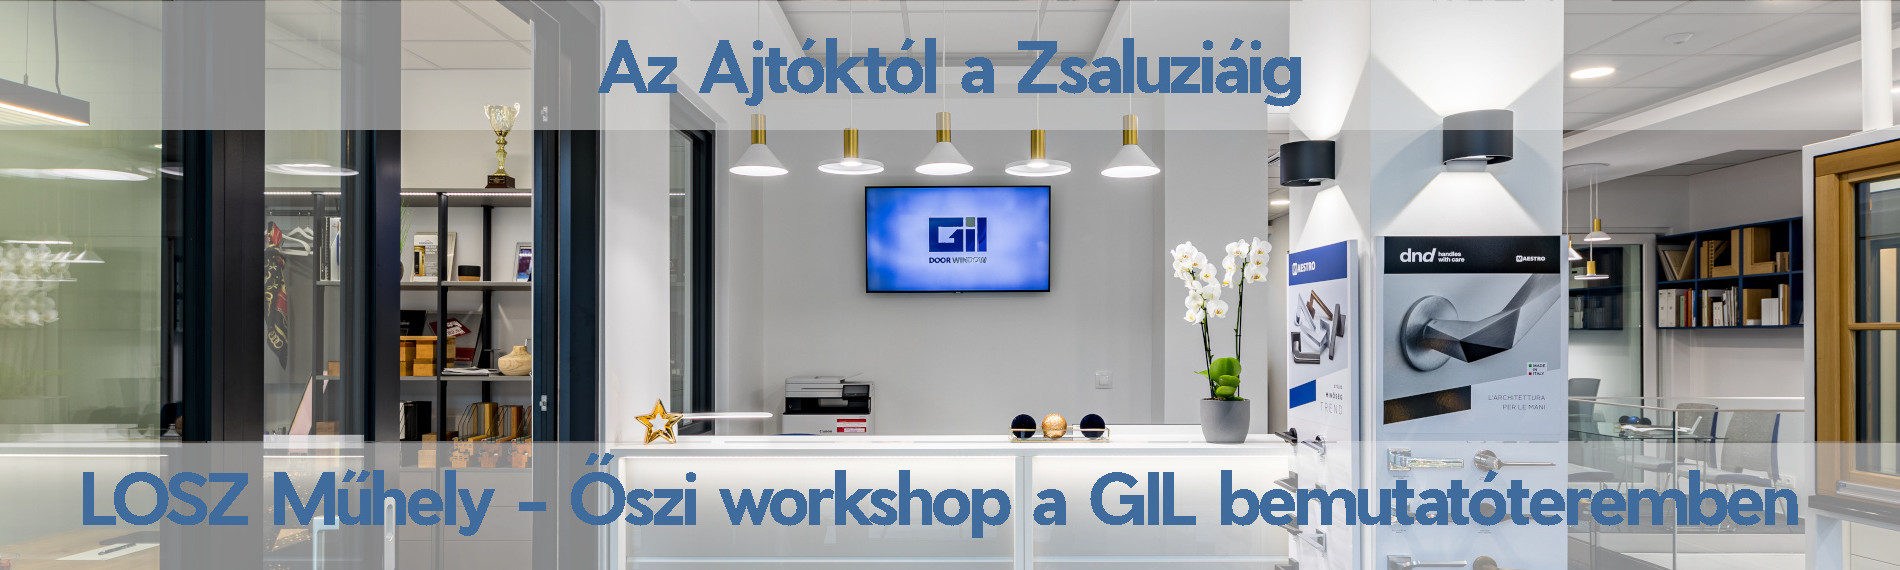 LOSZ Műhely - Őszi workshop a GIL bemutatóteremben